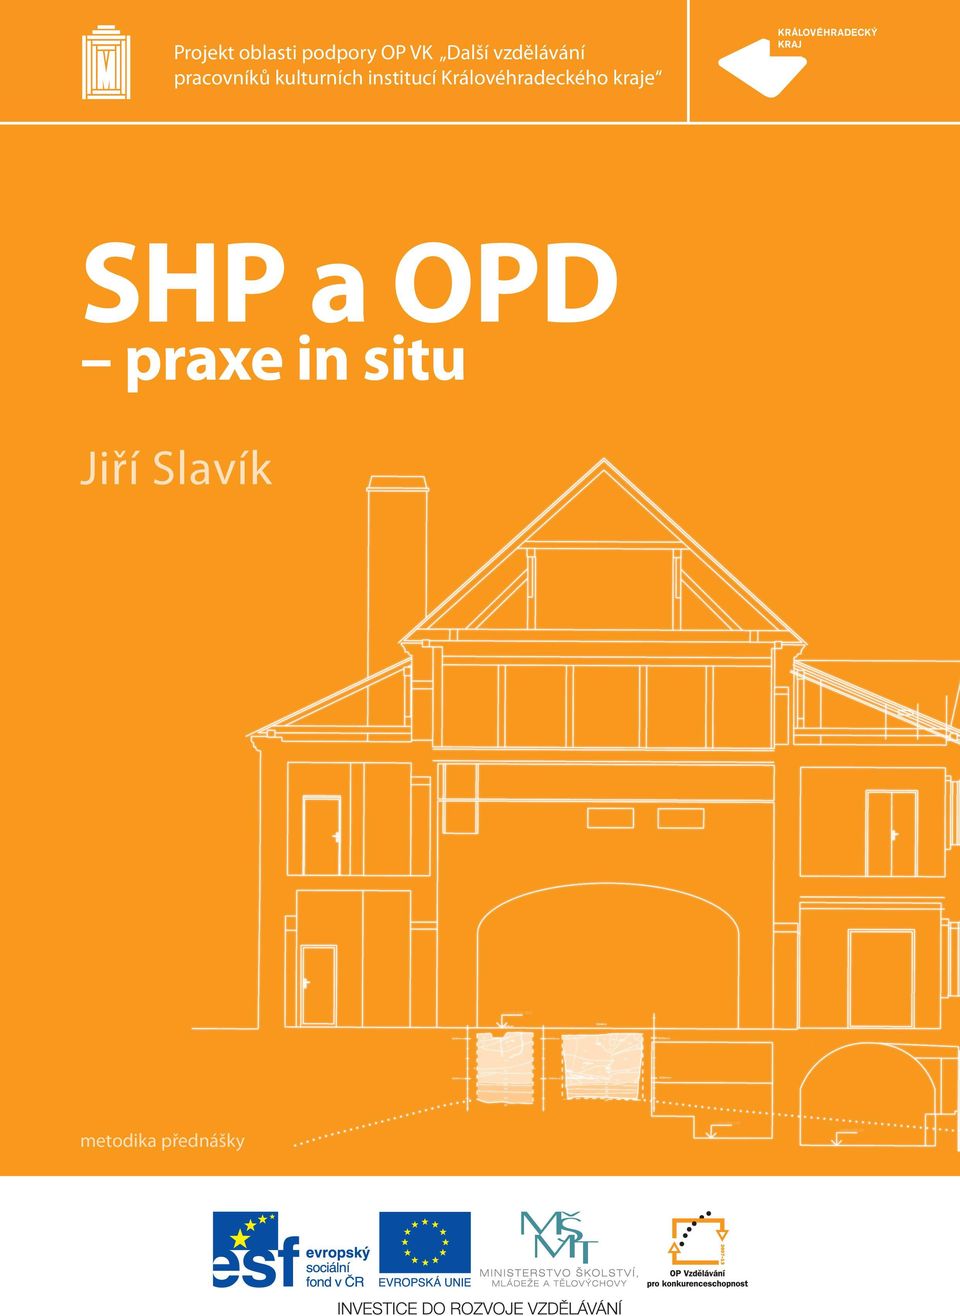 SHP a OPD praxe in situ